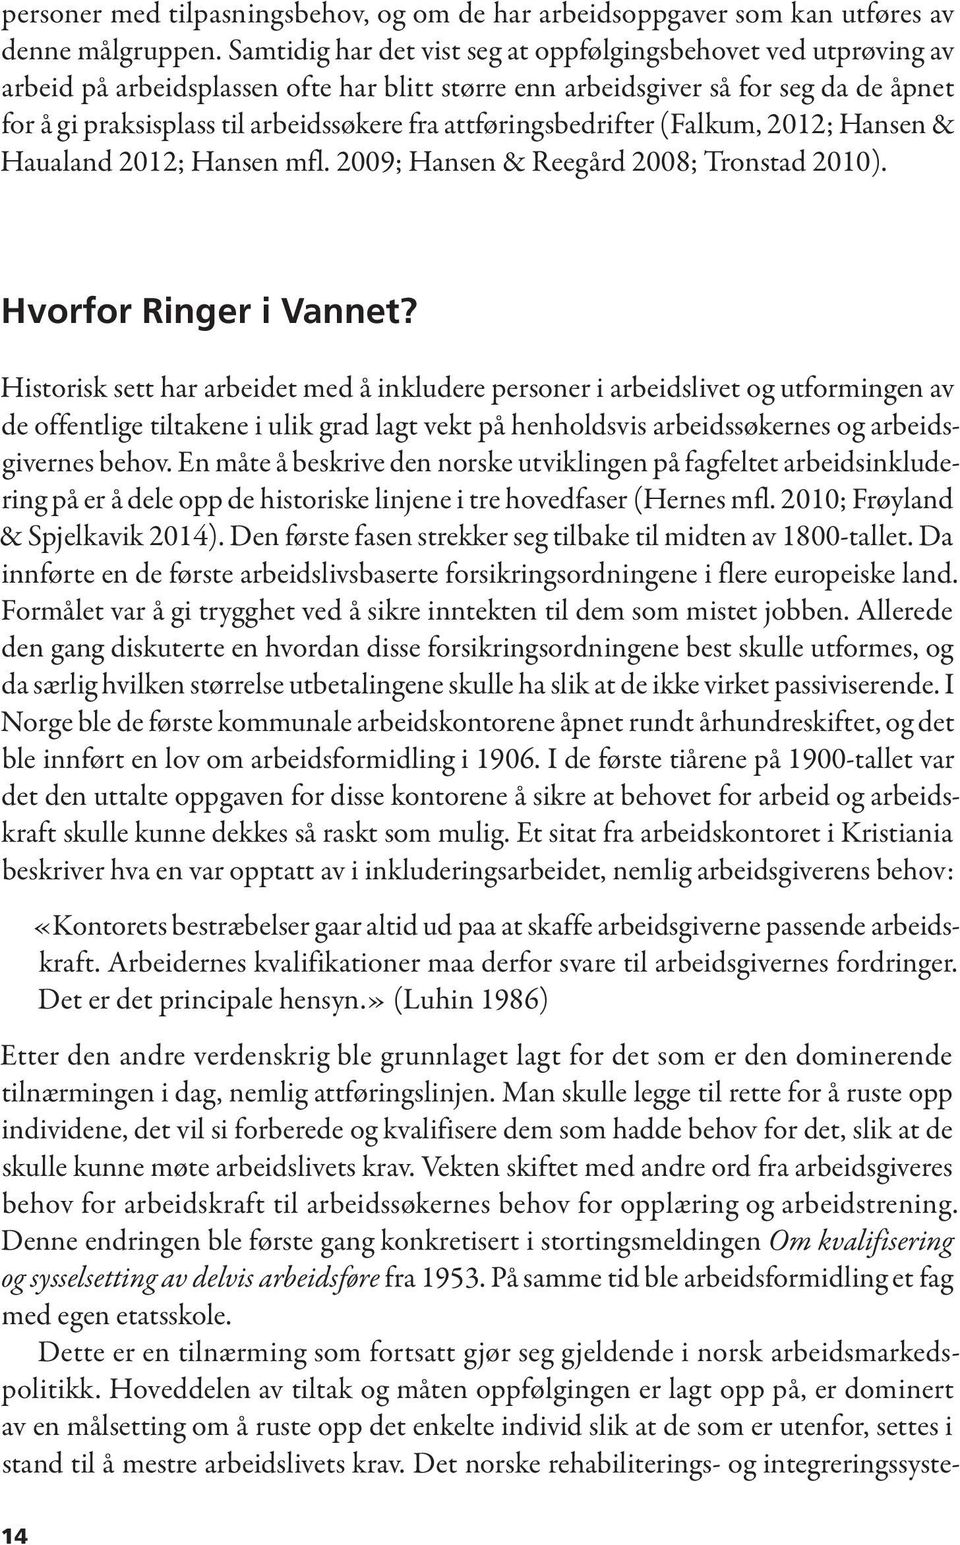 attføringsbedrifter (Falkum, 2012; Hansen & Haualand 2012; Hansen mfl. 2009; Hansen & Reegård 2008; Tronstad 2010). Hvorfor Ringer i Vannet?